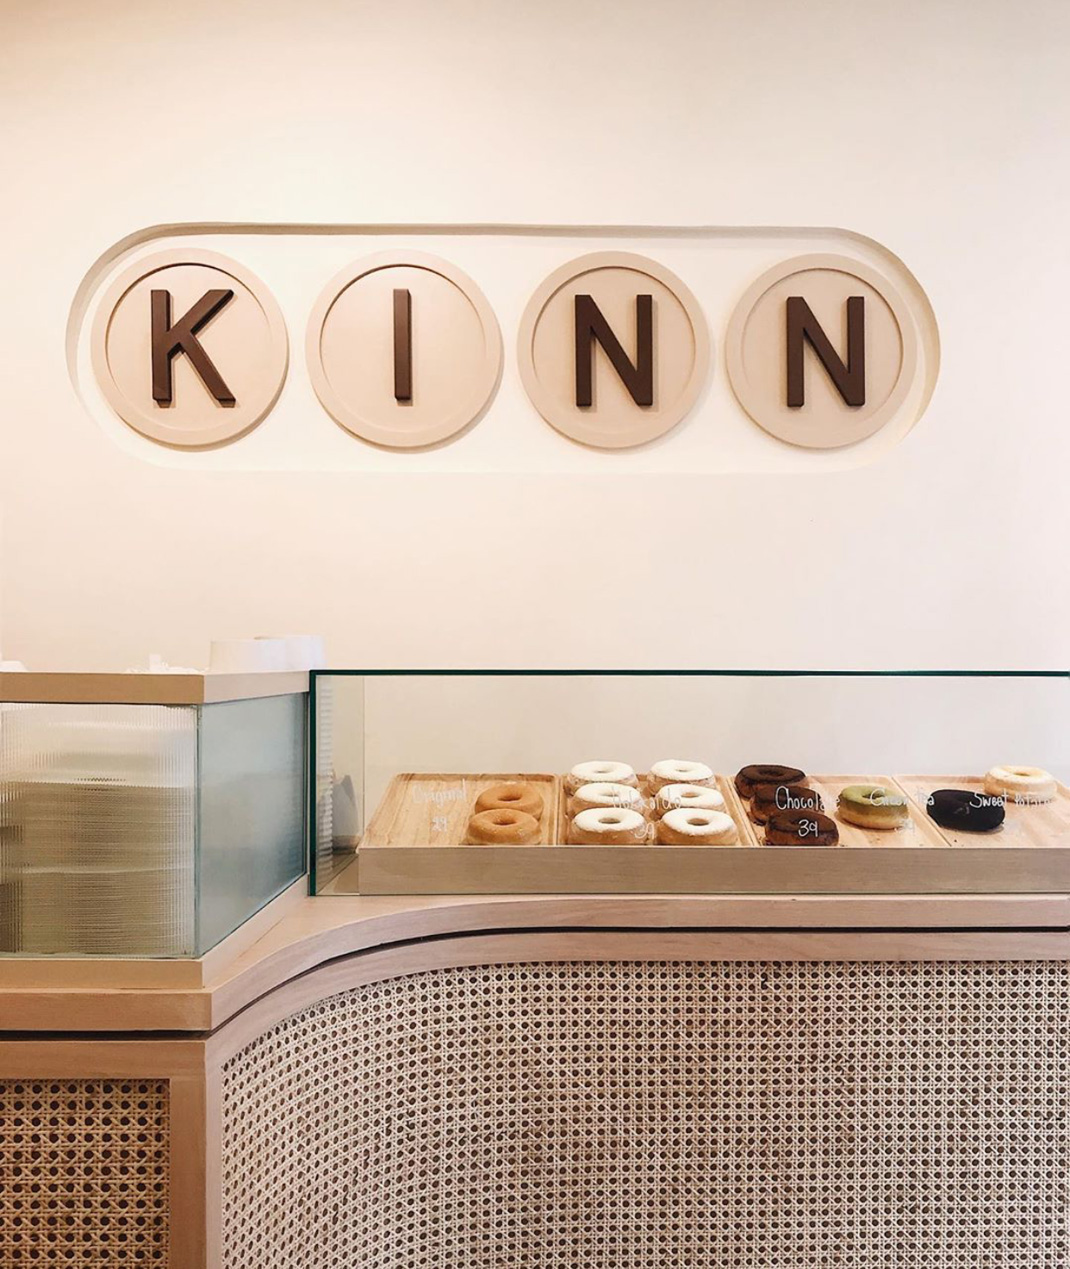 Kinn Bake咖啡店 曼谷 曼谷 咖啡馆 咖啡店 袖珍店 logo设计 vi设计 空间设计